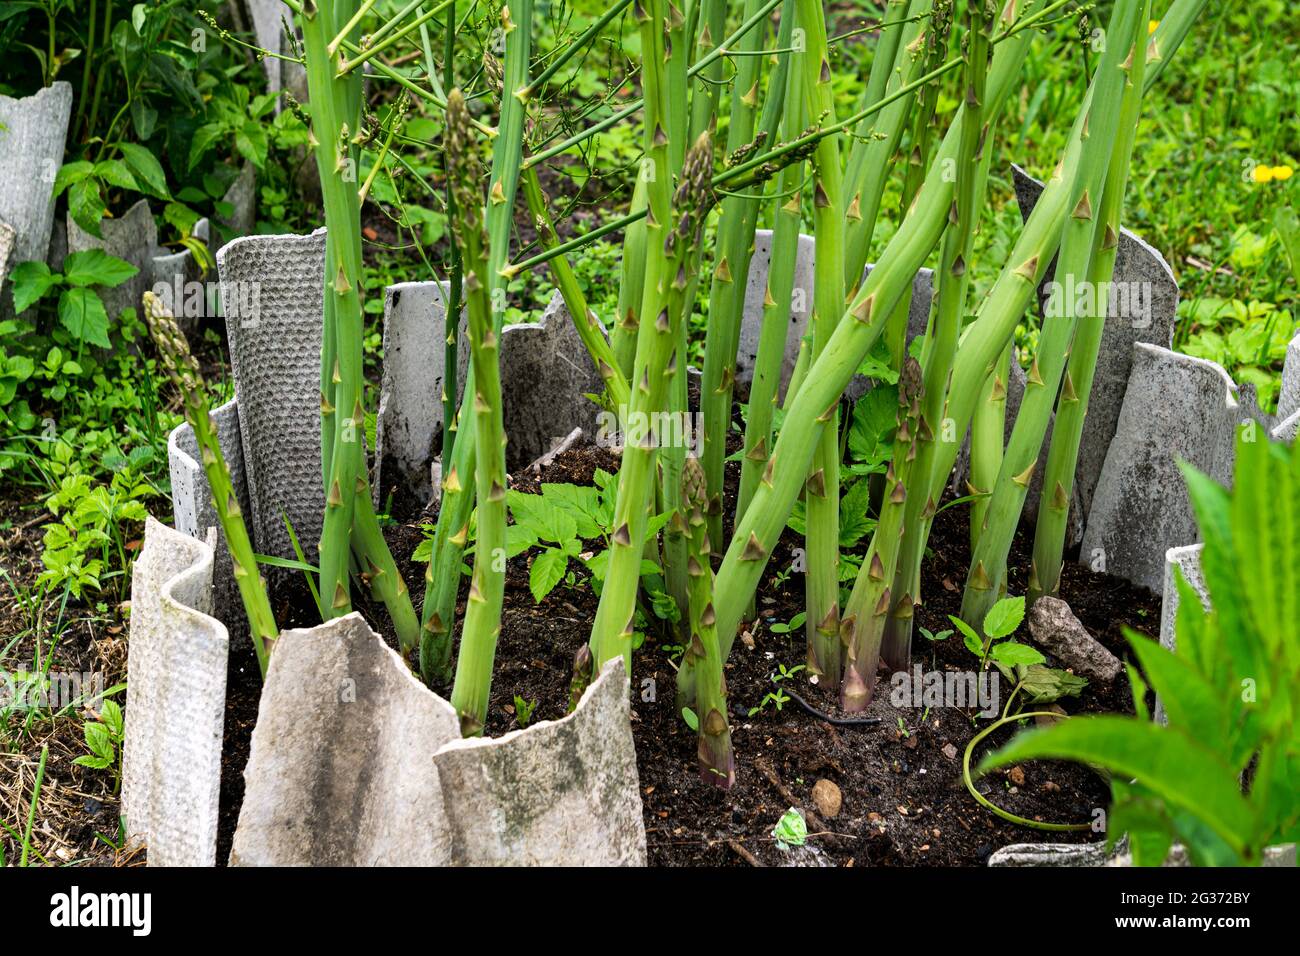 Texture horizontale des tiges d'asperges vertes dans un jardin potager. Banque D'Images